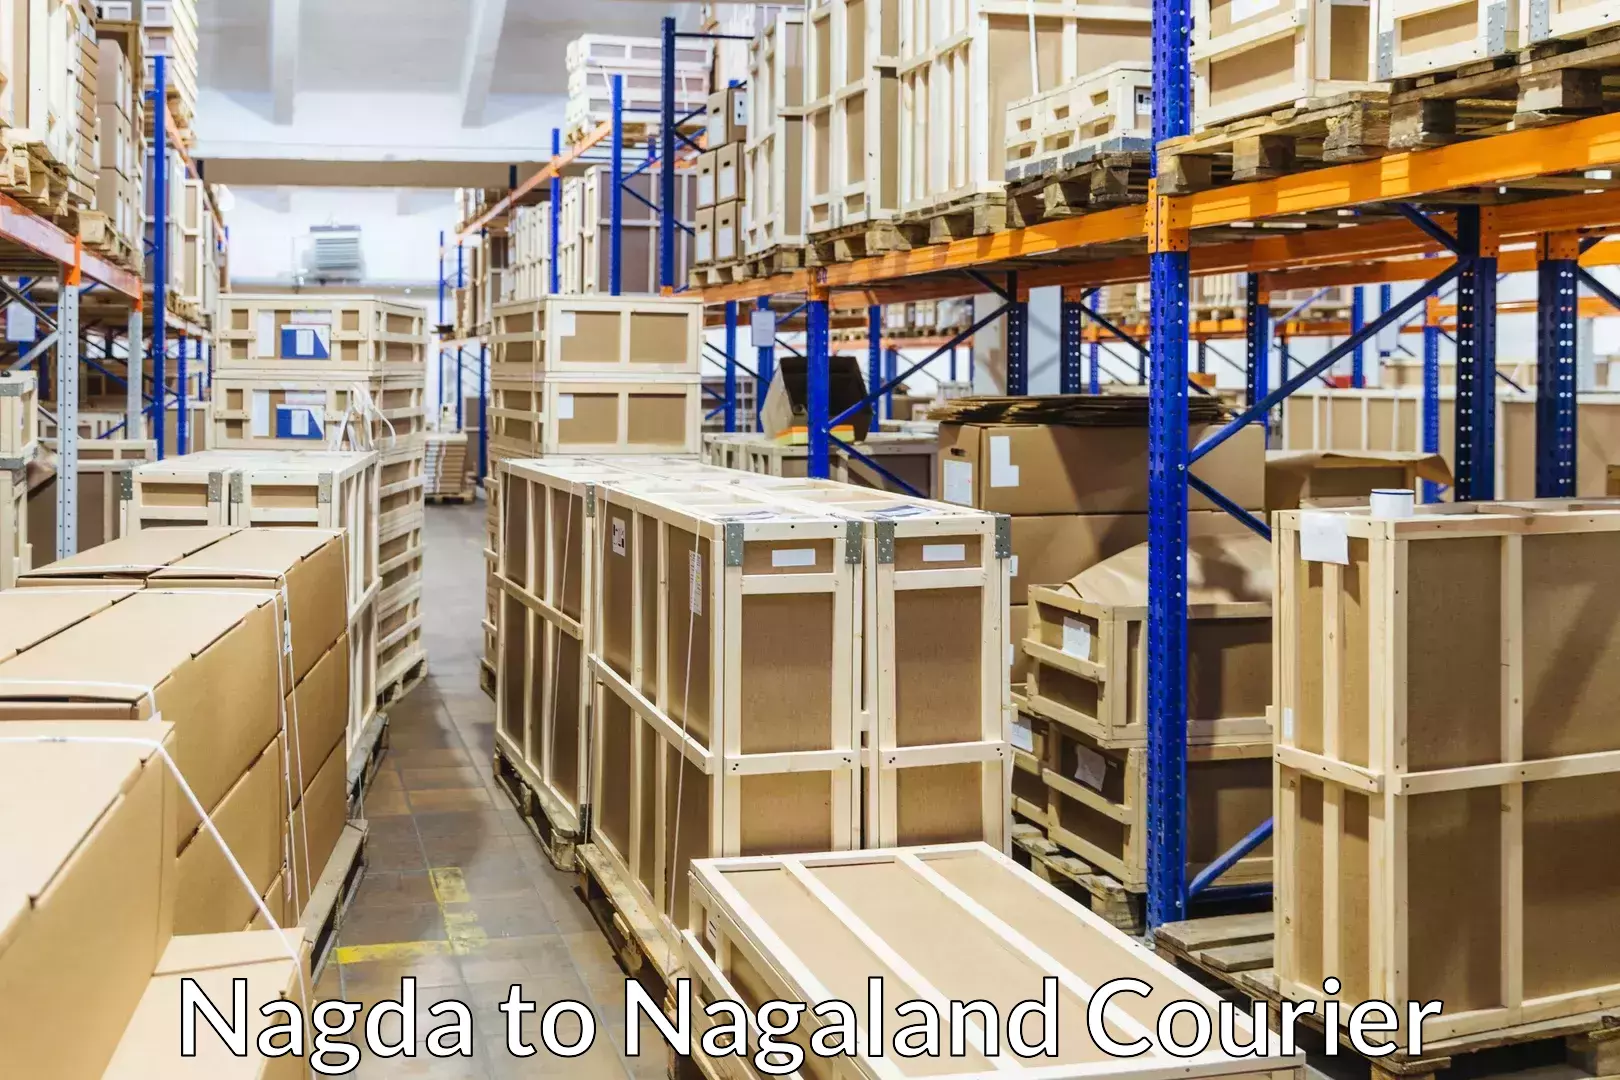 Expert packing and moving Nagda to Nagaland